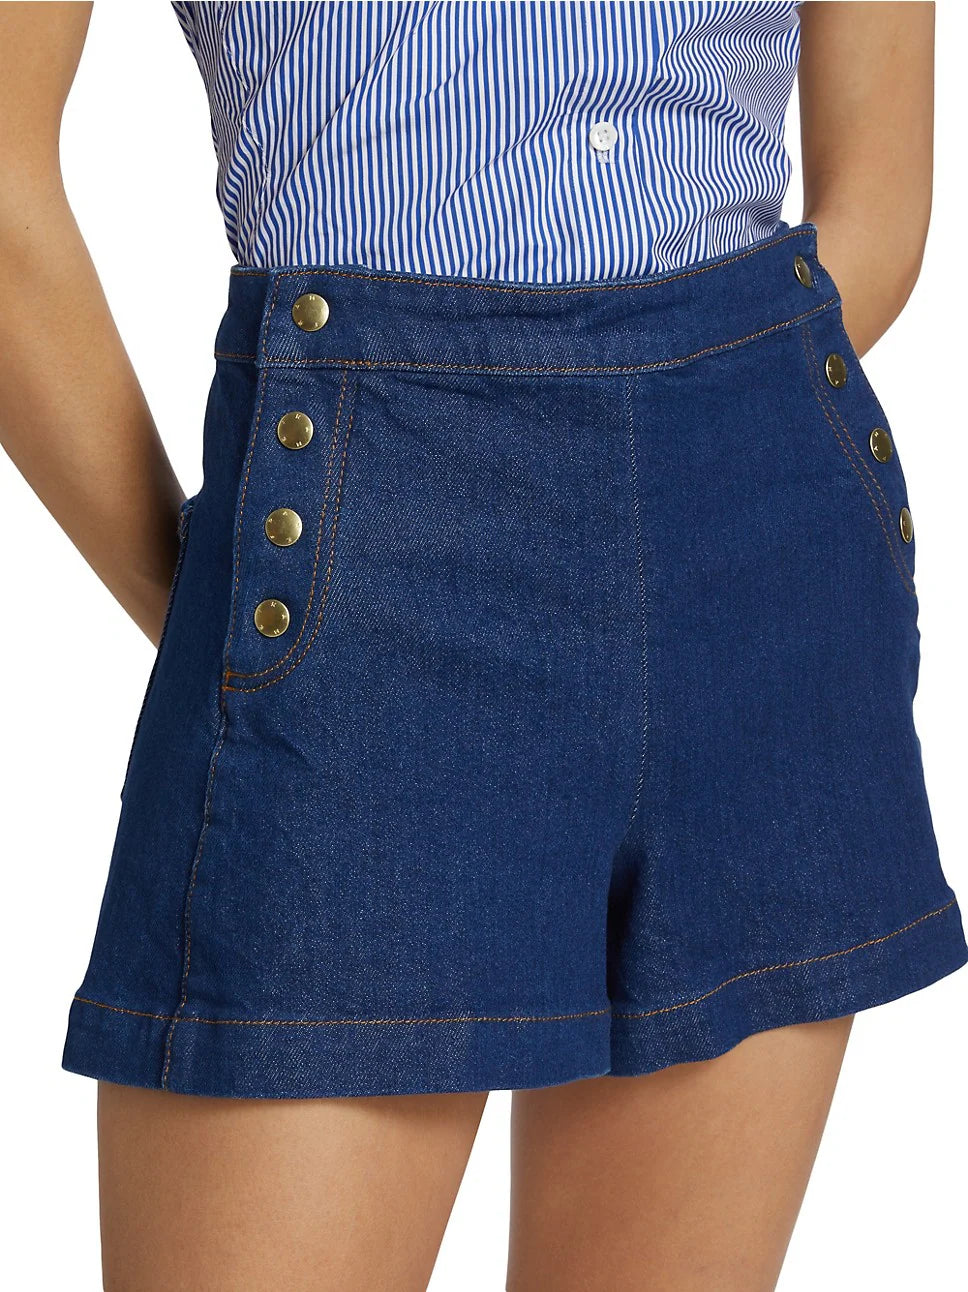 Sailor Denim Snap Shorts